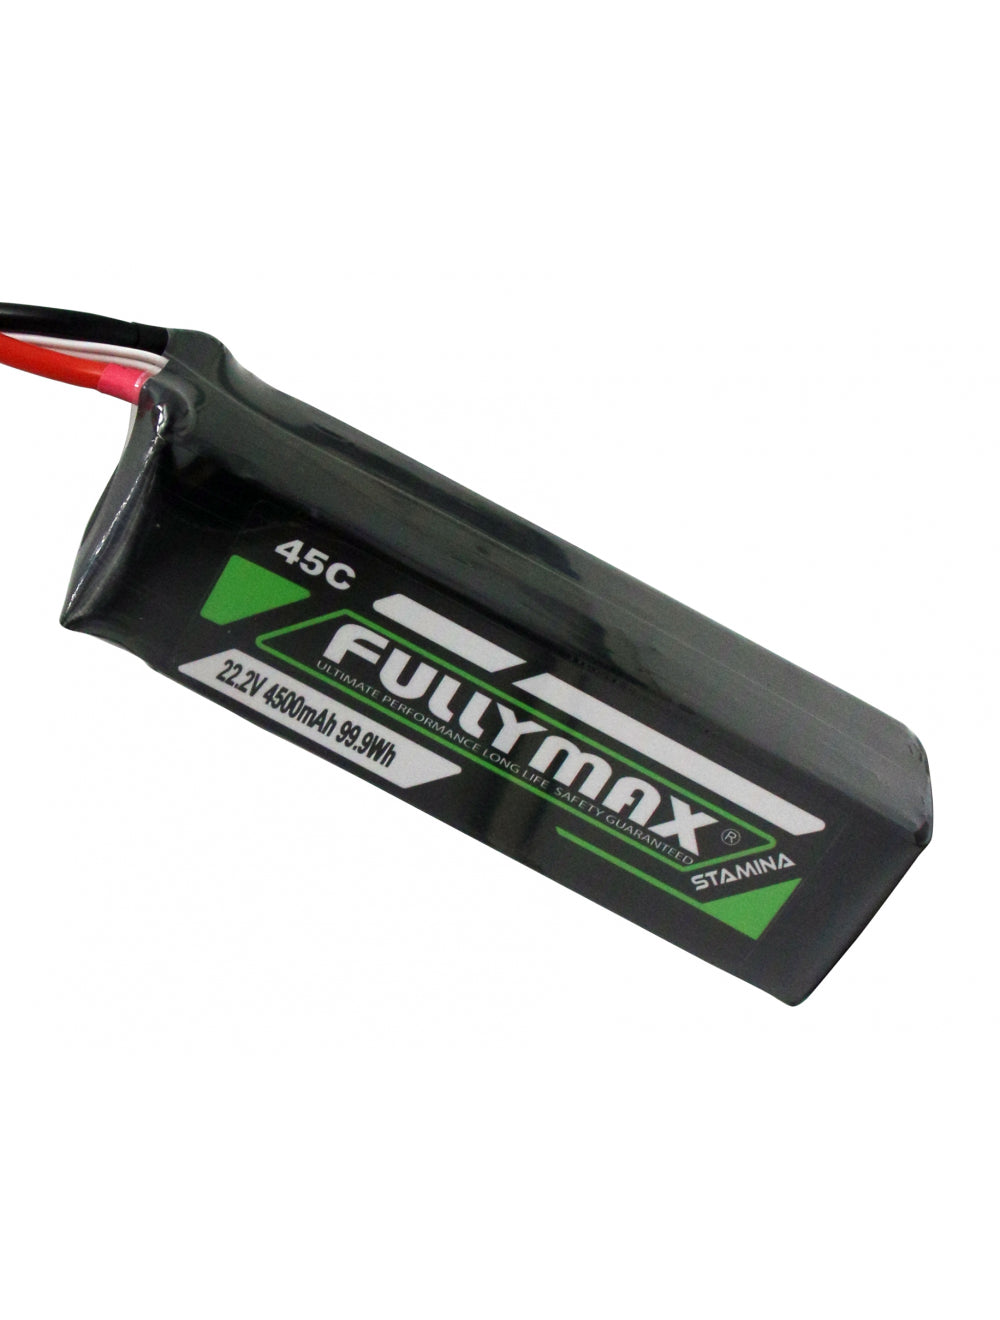 Overlander Fullymax 4500mAh 22.2V 6S 45C LiPo Battery - EC5 Connector 3446